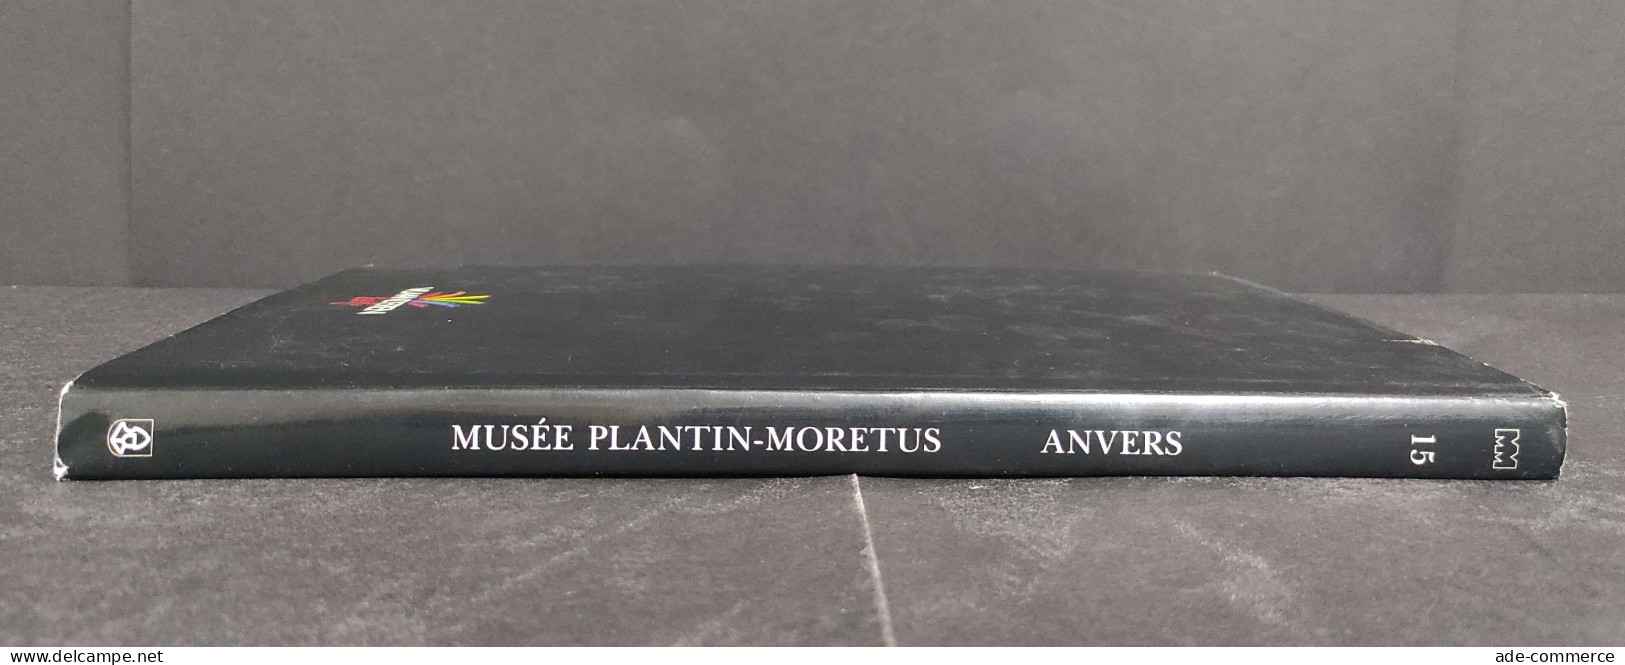 Musee Platin-Moretus - Anvers - F. Nave - L. Voet - 1989 - Kunst, Antiquitäten